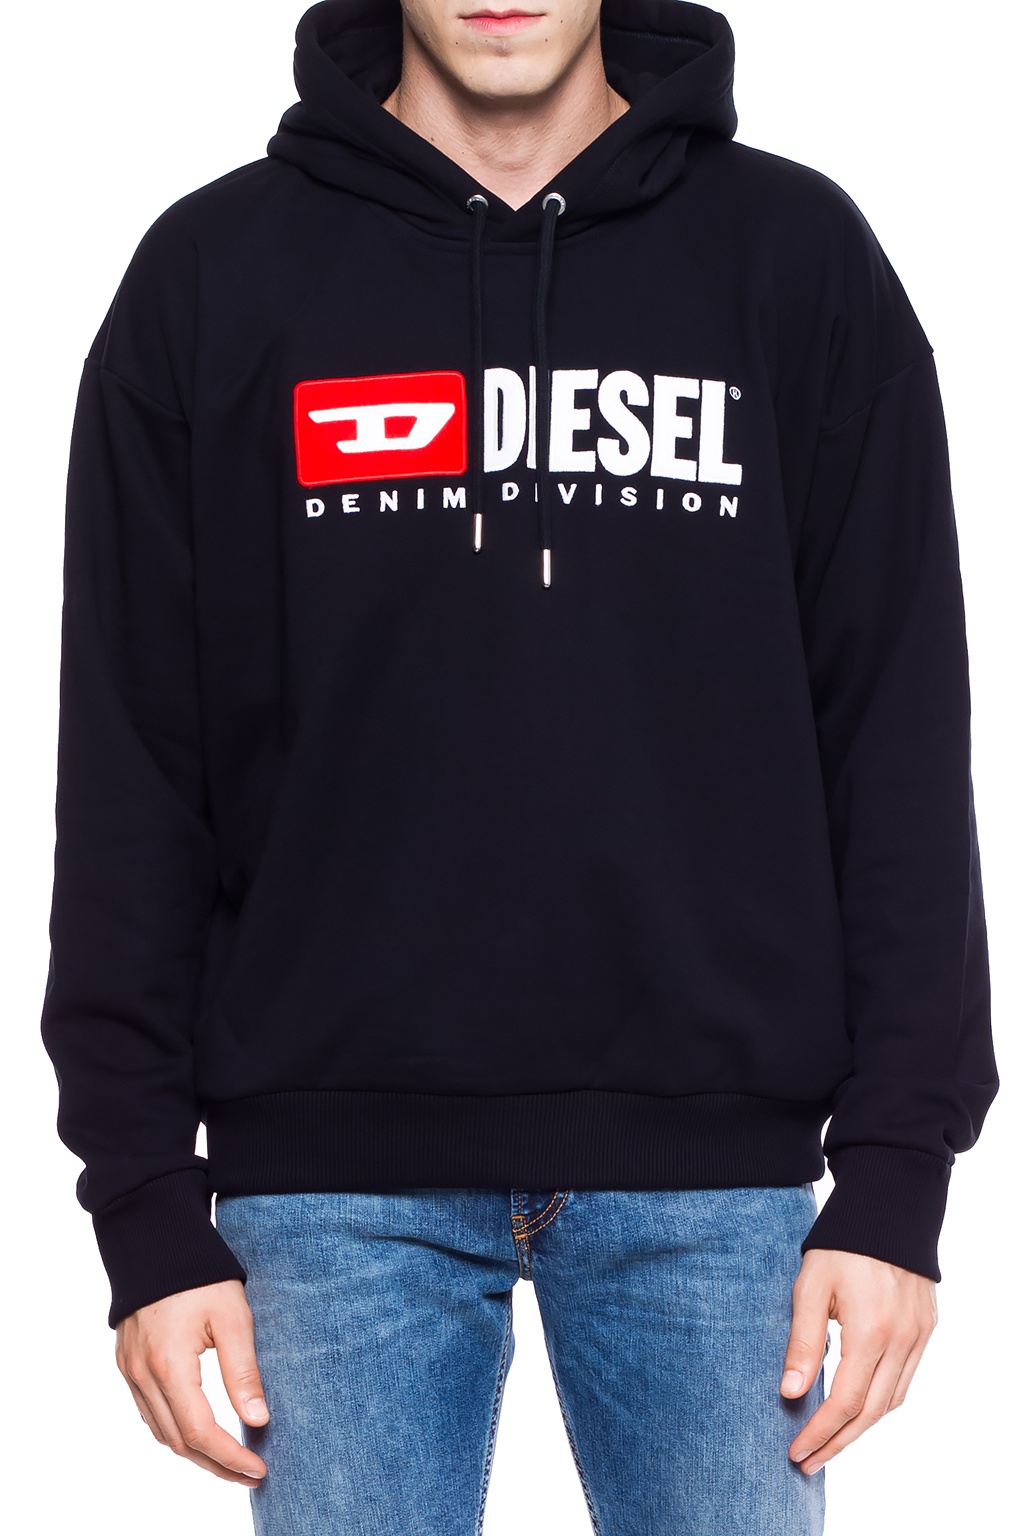 Diesel ‘S-DIVISION’ hoodie